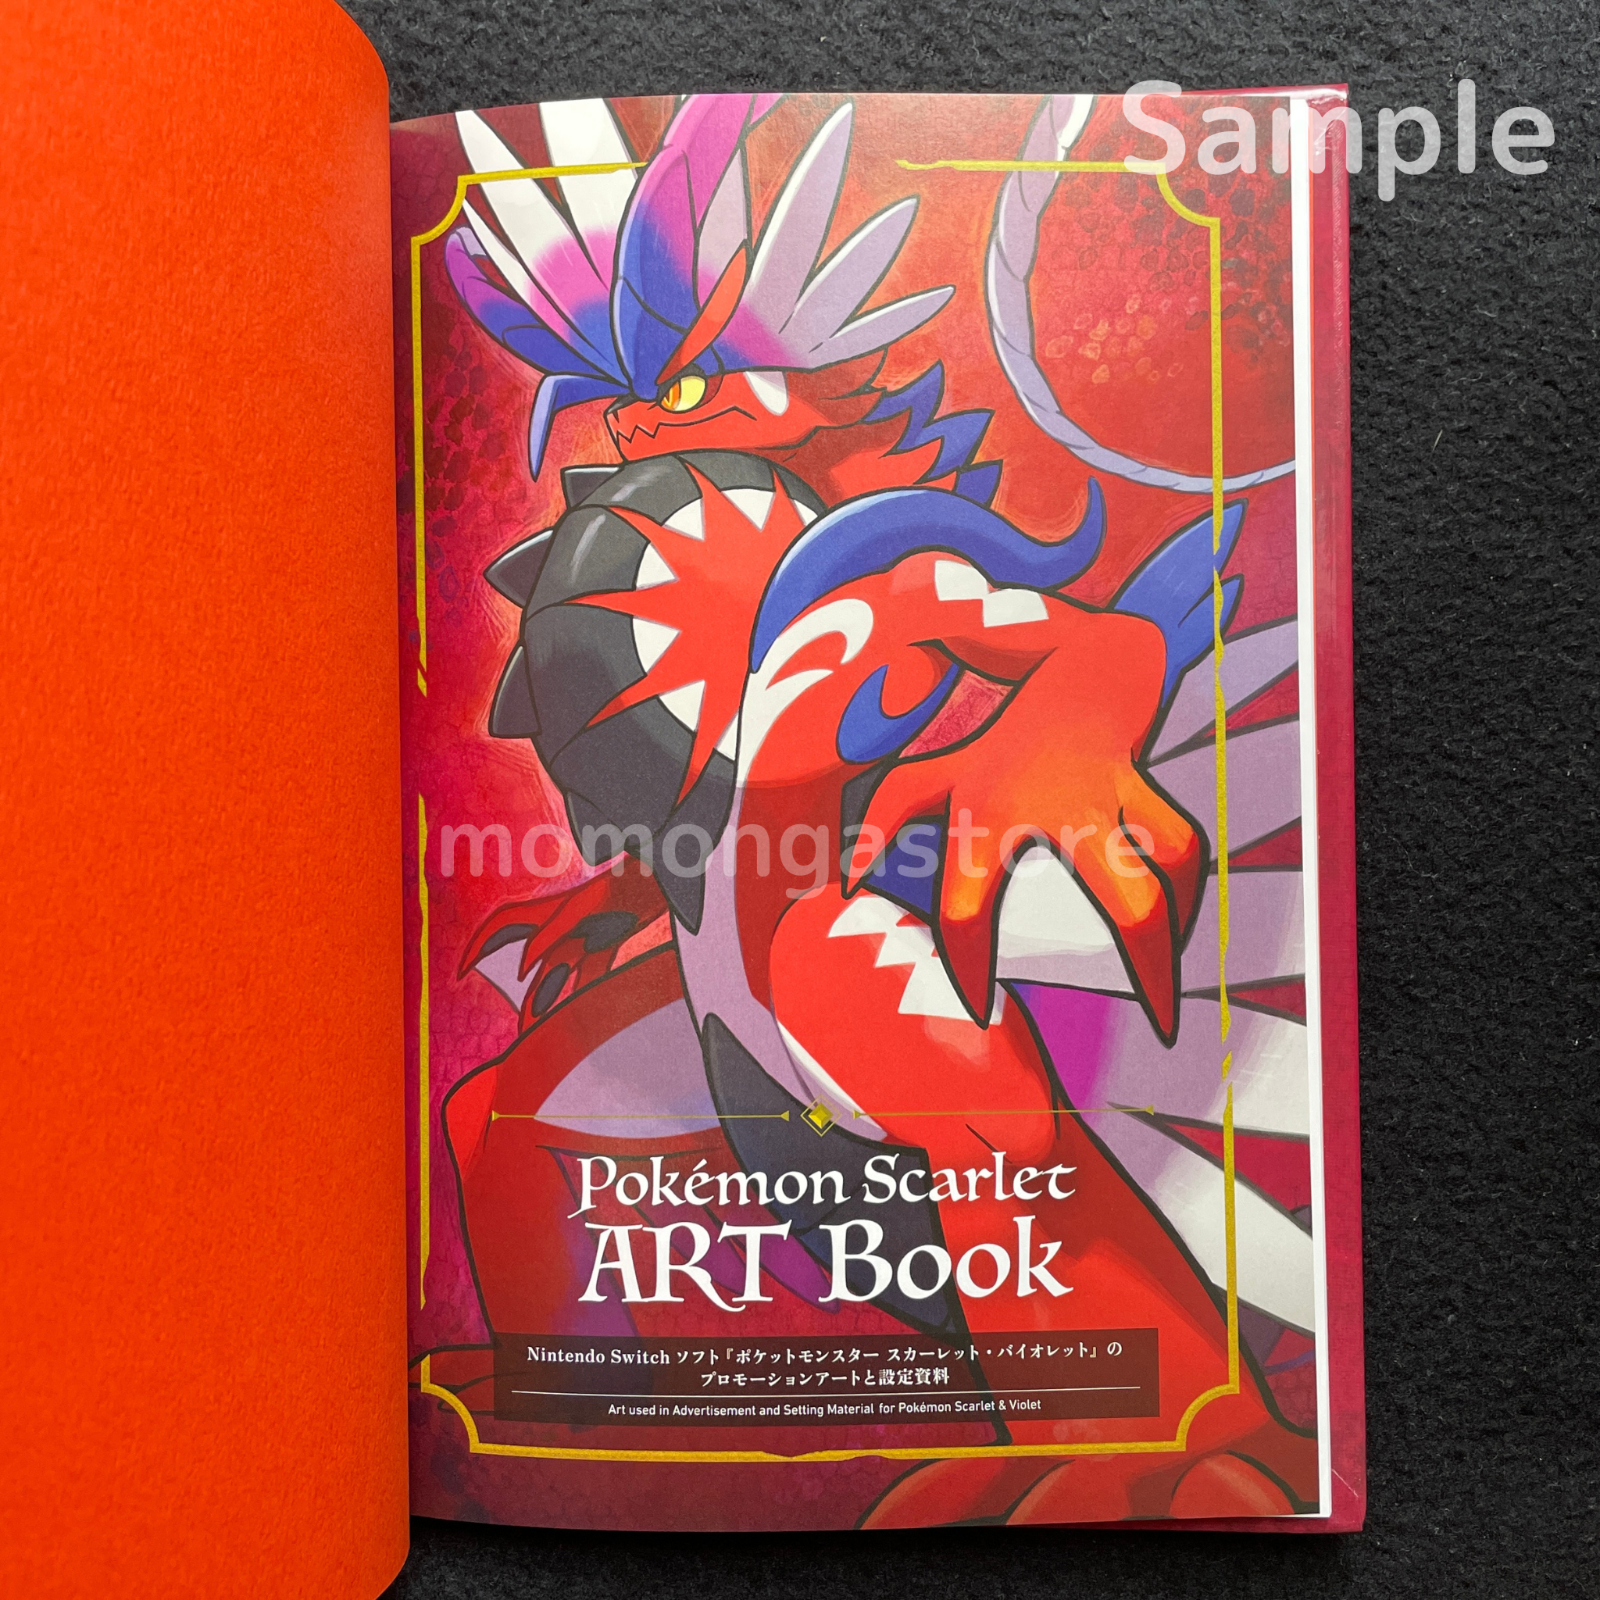 Sealed Pokemon Scarlet & Violet Art books + Pokemon Center Limited Card Set Pokémon Center Does not apply - фотография #9